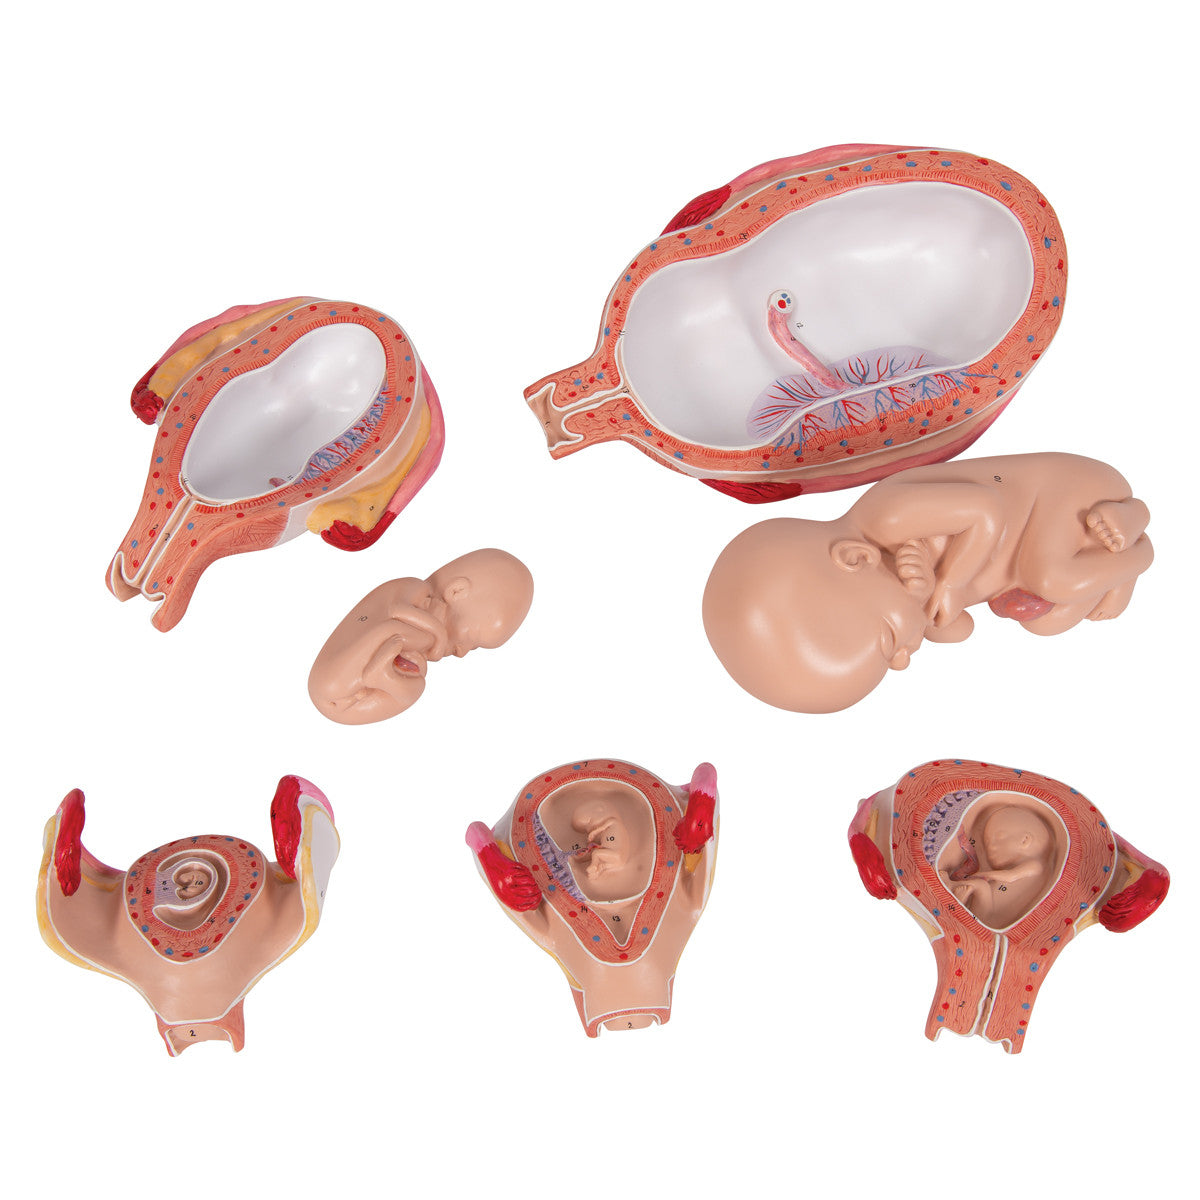 3B Scientific Pregnancy Series - 5 Models | 3B Scientific L11/9